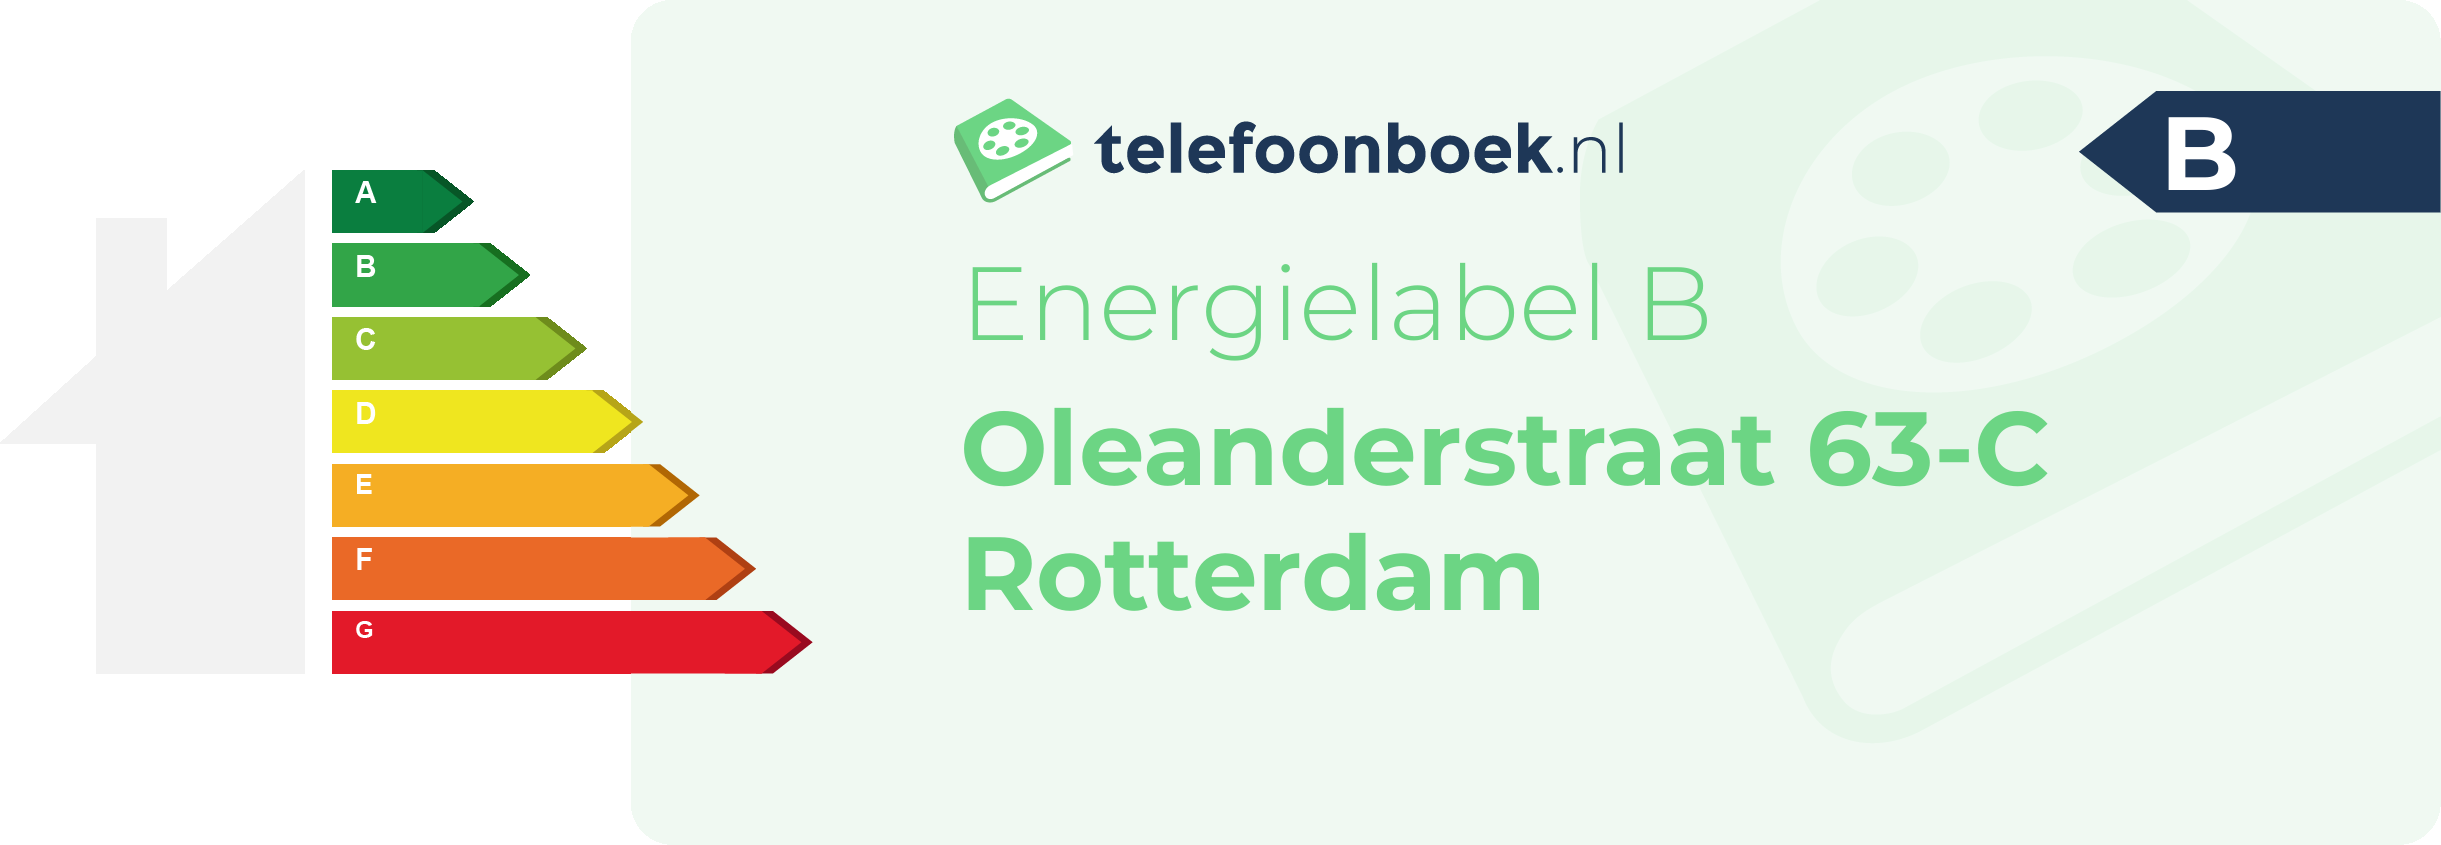 Energielabel Oleanderstraat 63-C Rotterdam